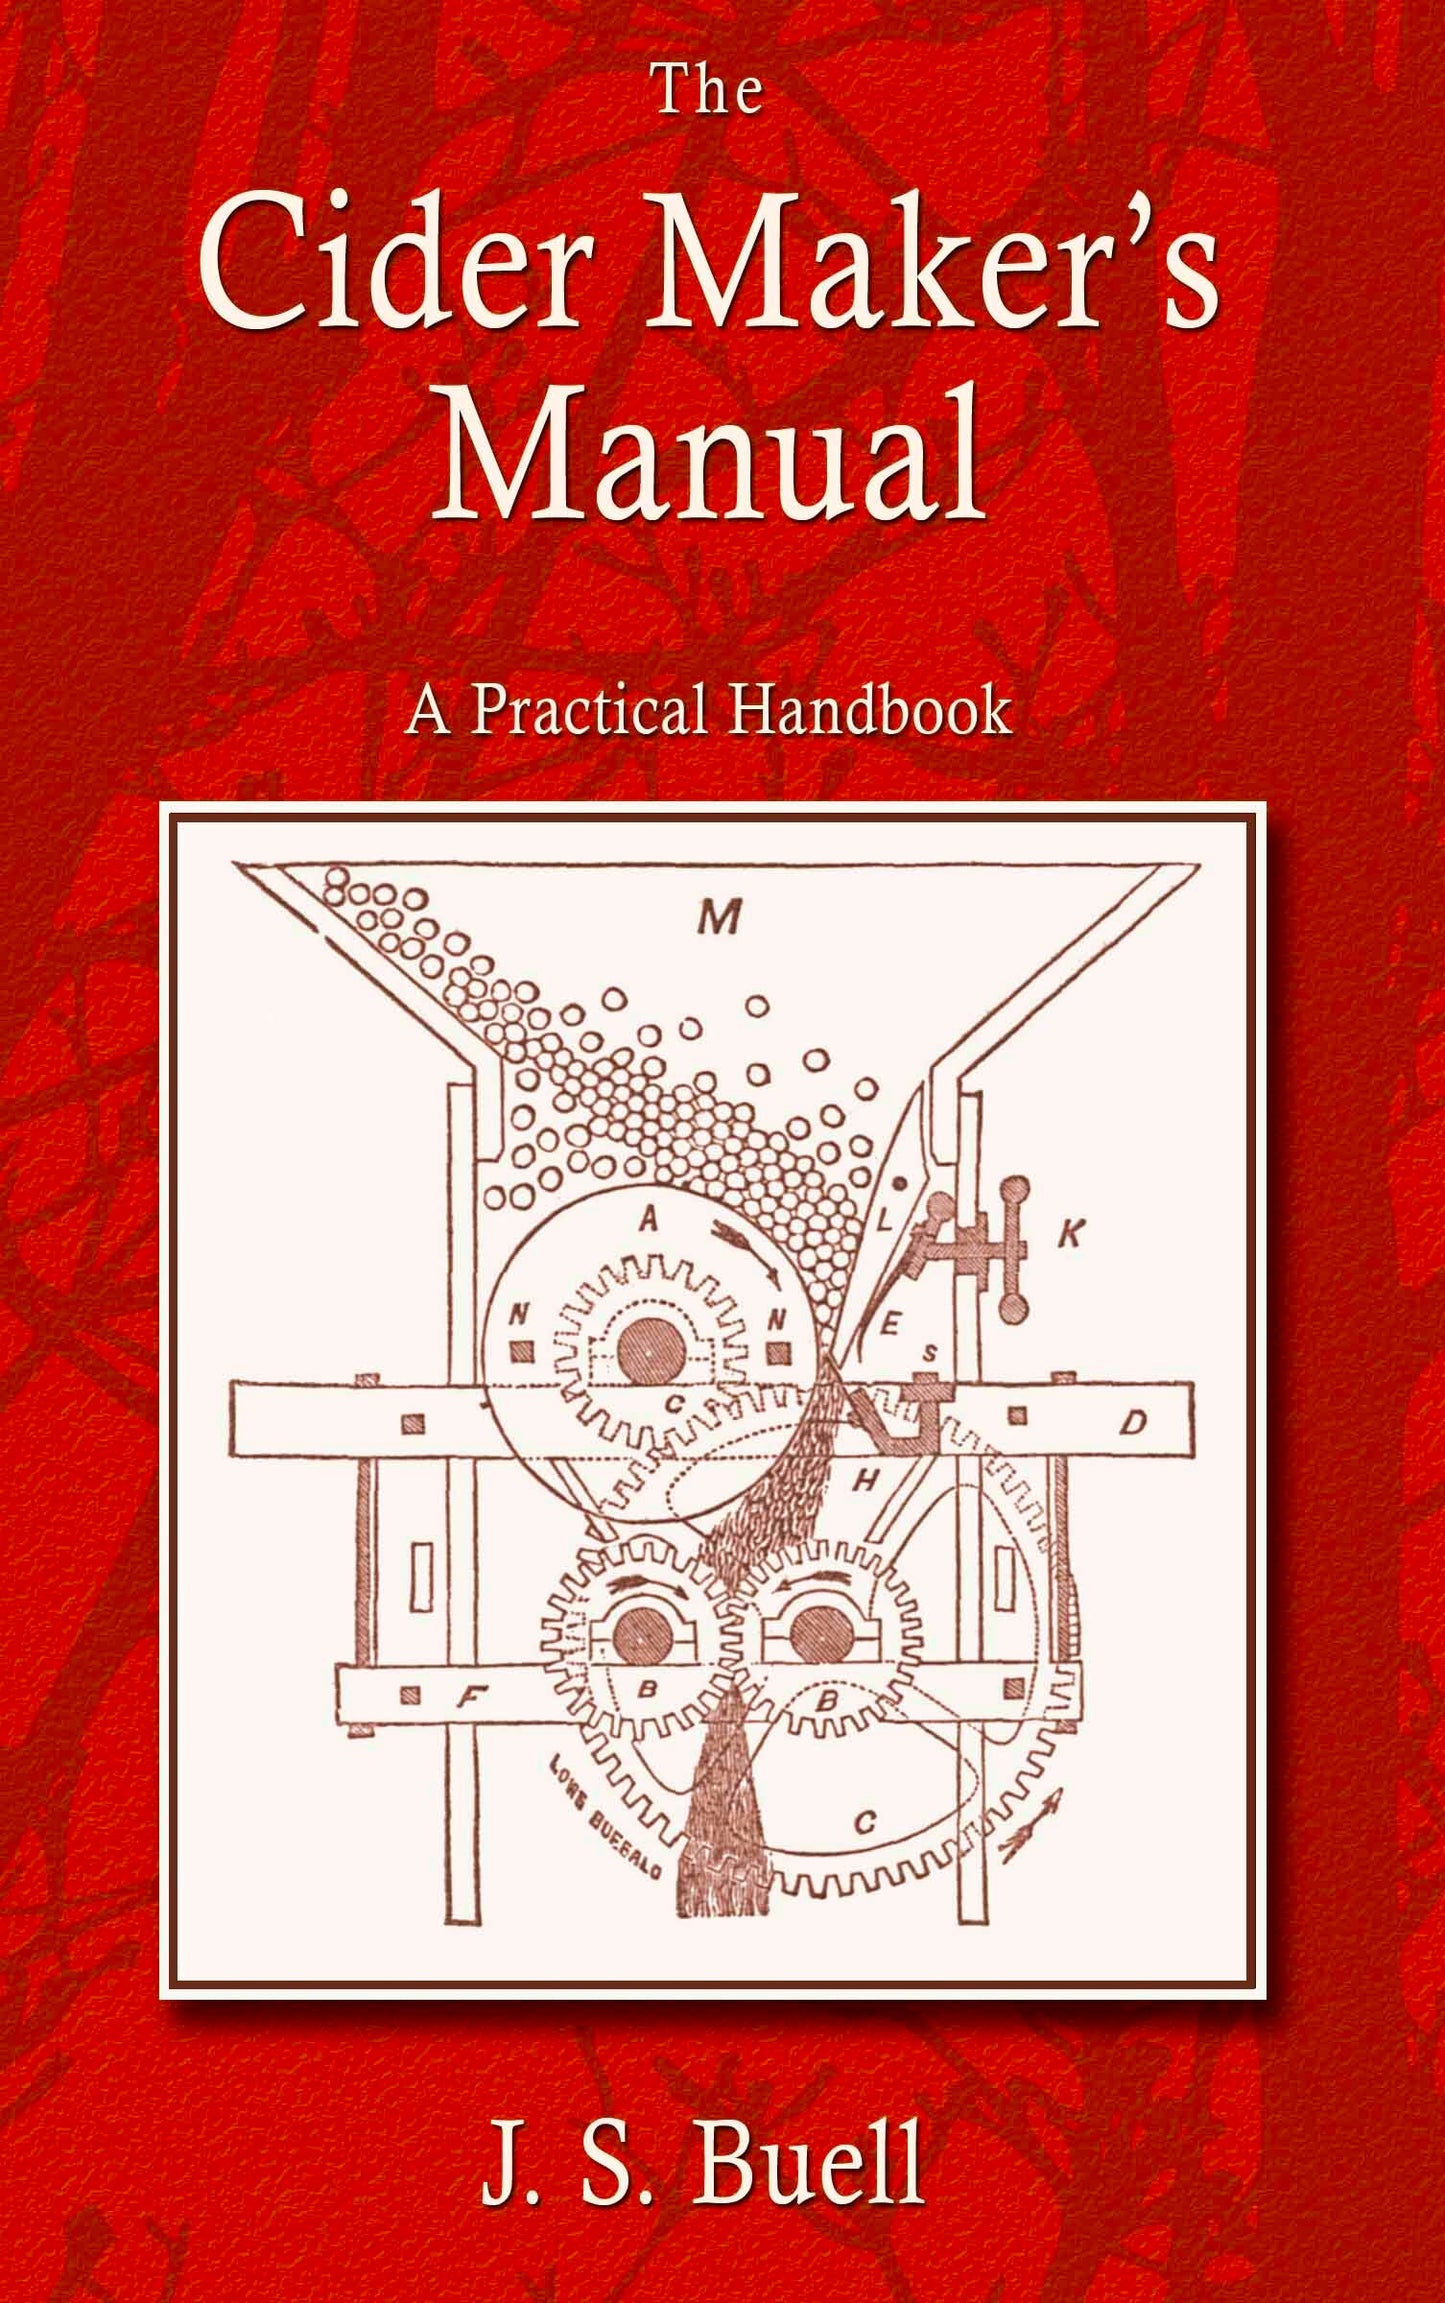 The Cider Maker's Manual